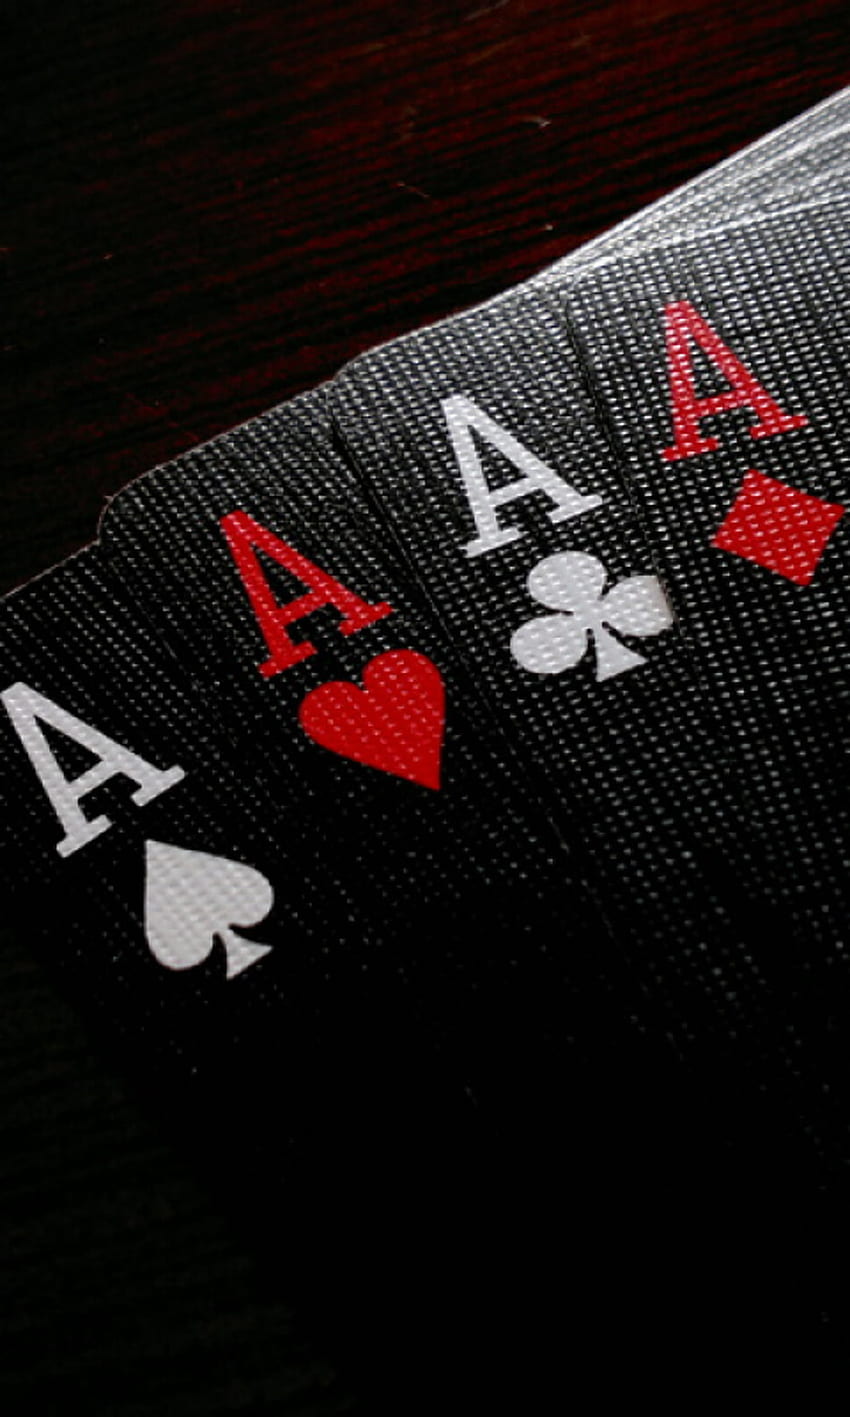 Ace Of Spade, Heart, Clubs And Diamond Playing Cards - Papel De Parede Celular Poker, Deck of Cards fondo de pantalla del teléfono